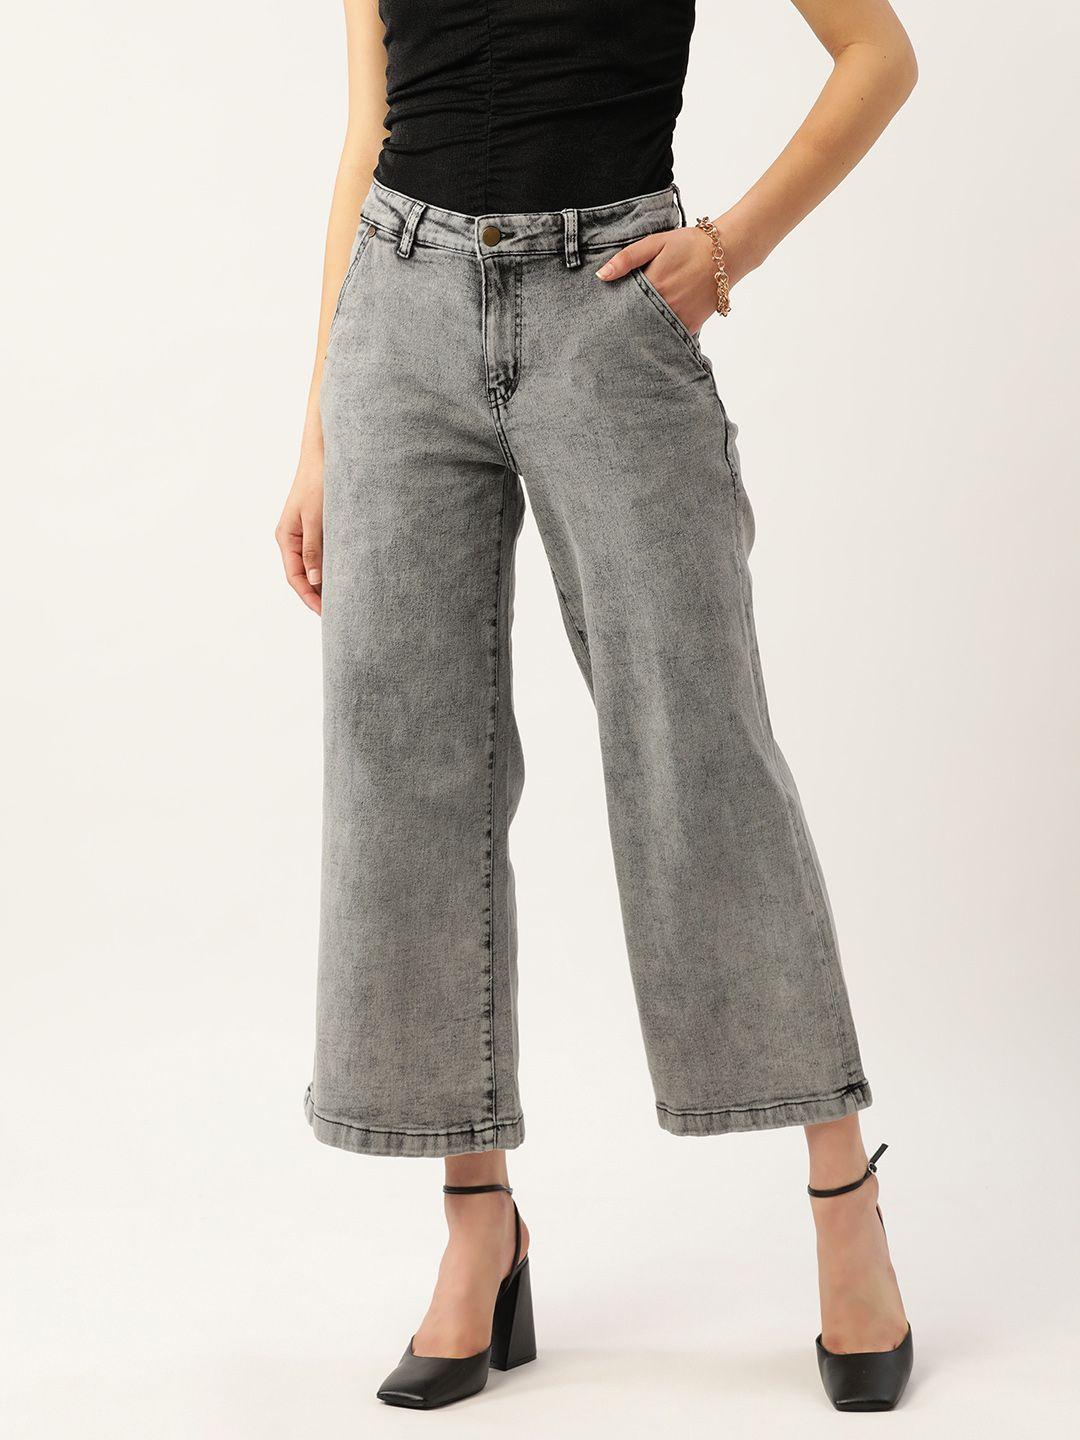 dressberry women wide leg cropped jeans